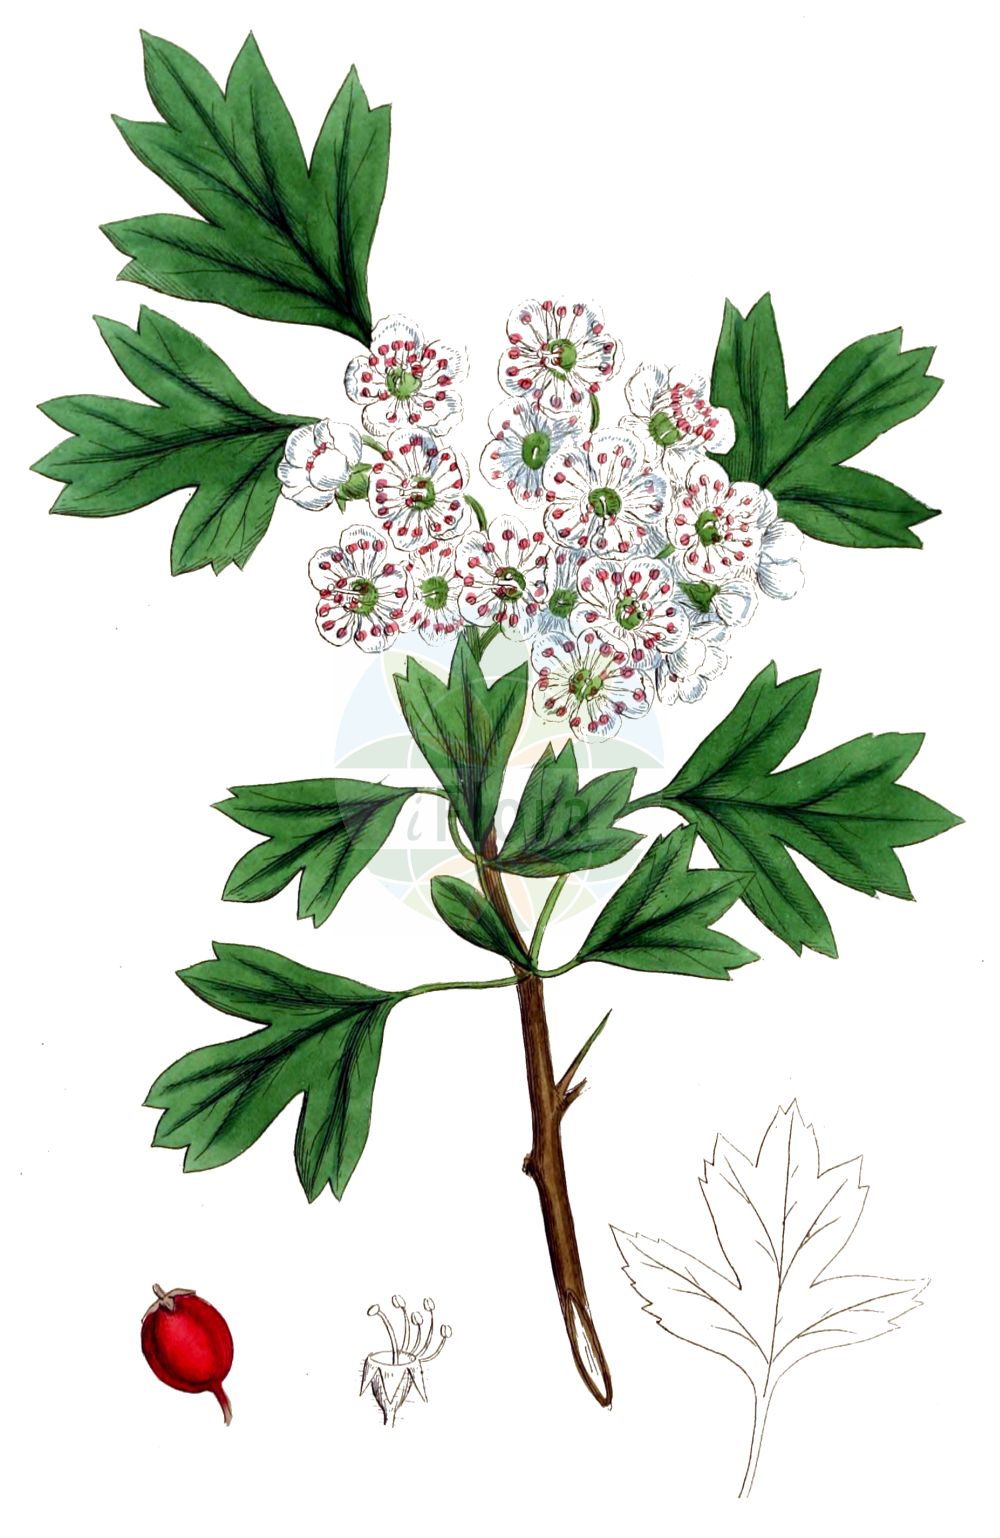 Historische Abbildung von Crataegus monogyna (Eingriffeliger Weißdorn - Hawthorn). Das Bild zeigt Blatt, Bluete, Frucht und Same. ---- Historical Drawing of Crataegus monogyna (Eingriffeliger Weißdorn - Hawthorn). The image is showing leaf, flower, fruit and seed.(Crataegus monogyna,Eingriffeliger Weißdorn,Hawthorn,Crataegus aegeica,Crataegus aguilaris,Crataegus alemanniensis,Crataegus alutacea,Crataegus apiifolia,Crataegus azarella,Crataegus borealoides,Crataegus bracteolaris,Crataegus brevispina,Crataegus chlorocarpa,Crataegus cuneata,Crataegus curvisepaloides,Crataegus debeauxii,Crataegus dissecta,Crataegus diversifolia,Crataegus elegans,Crataegus floribunda,Crataegus granatensis,Crataegus hirsuta,Crataegus inermis,Crataegus insegnae,Crataegus integerrima,Crataegus intermedia,Crataegus jacquinii,Crataegus krima,Crataegus krumbholzii,Crataegus kyrtostyla,Crataegus lamprophylla,Crataegus lasiocarpa,Crataegus leiomonogyna,Crataegus lipskyi,Crataegus maroccana,Crataegus maura,Crataegus monogyna,Crataegus oligacantha,Crataegus orientobaltica,Crataegus panachaica,Crataegus parvifolia,Crataegus paucifoliata,Crataegus petiolulata,Crataegus popovii,Crataegus praearmata,Crataegus pulchella,Crataegus segobricensis,Crataegus septempartita,Crataegus stevenii,Crataegus subborealis,Crataegus subintegriloba,Crataegus sublucens,Crataegus subserrata,Crataegus thyrsoidea,Crataegus triloba,Crataegus villosa,Crataegus xeromorpha,Mespilus brevispina,Mespilus diversifolia,Mespilus elegans,Mespilus fissa,Mespilus insegnae,Mespilus maroccana,Mespilus maura,Mespilus monogyna,Mespilus polyacantha,Mespilus triloba,Oxyacantha apiifolia,Oxyacantha azarella,Oxyacantha elegans,Oxyacantha granatensis,Oxyacantha kyrtostyla,Oxyacantha monogyna,Eingriffeliger Weissdorn,Eingriffel-Weissdorn,Einkern-Weissdorn,Spitzlappiger Weissdorn,Hawthorn,Common Hawthorn,Oneseed Hawthorn,English Hawthorn,May,Quickthorn,Single-seed Hawthorn,Whitethorn,Crataegus,Weißdorn,Hawthorn,Rosaceae,Rosengewächse,Rose family,Blatt,Bluete,Frucht,Same,leaf,flower,fruit,seed,Sowerby (1790-1813))